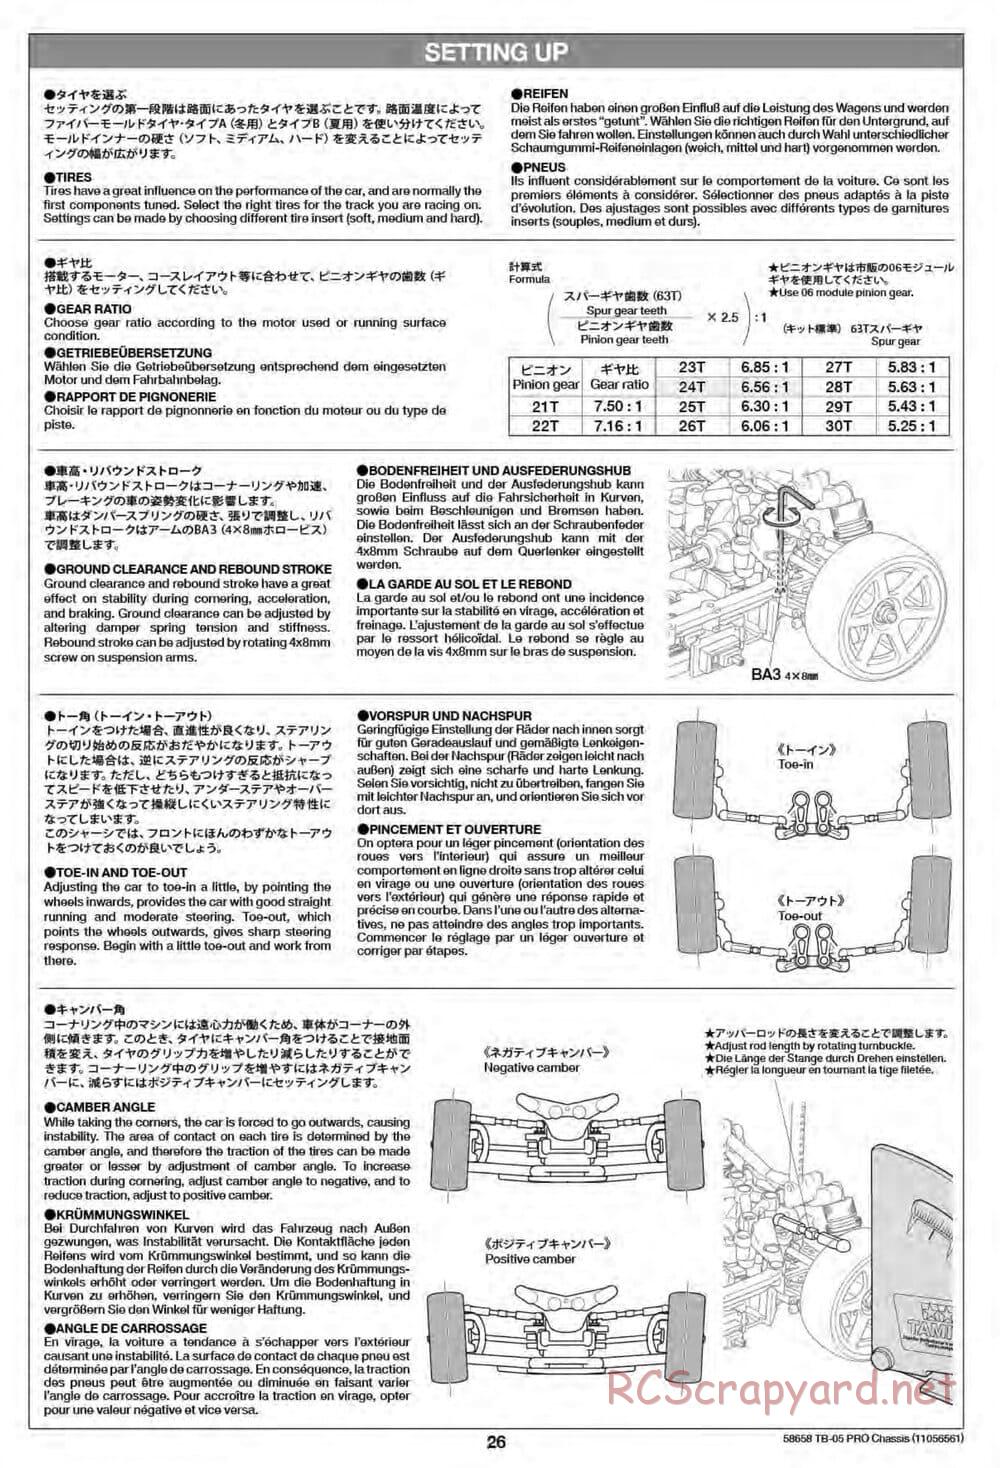 Tamiya - TB-05 Pro Chassis - Manual - Page 26